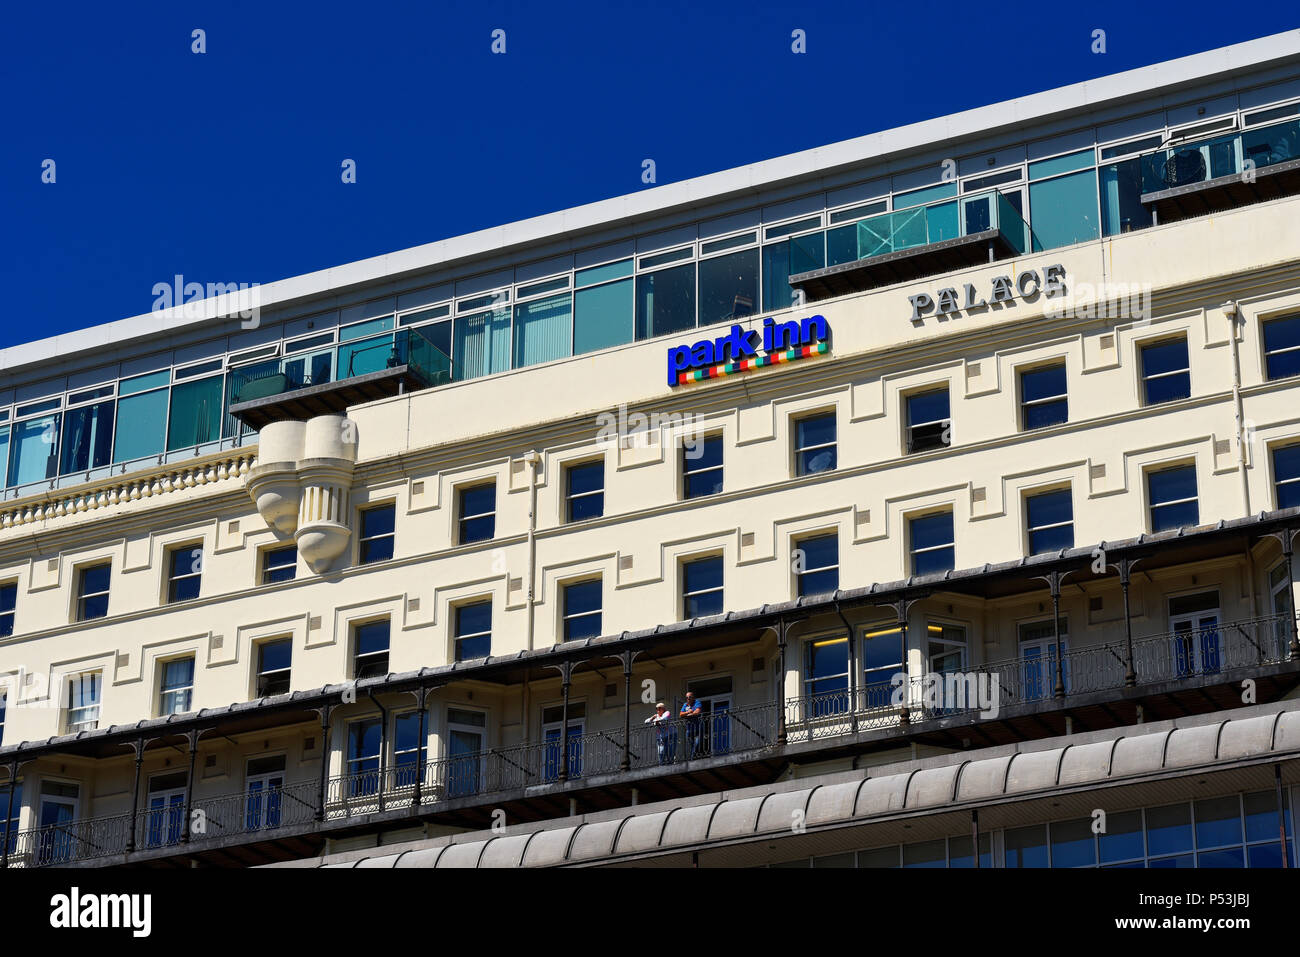 Park Inn Radisson Palace Hotel, Southend on Sea, Essex. Anciennement Metropole. Hôtel en bord de mer. Ciel bleu. Personnes sur le balcon de la chambre Banque D'Images